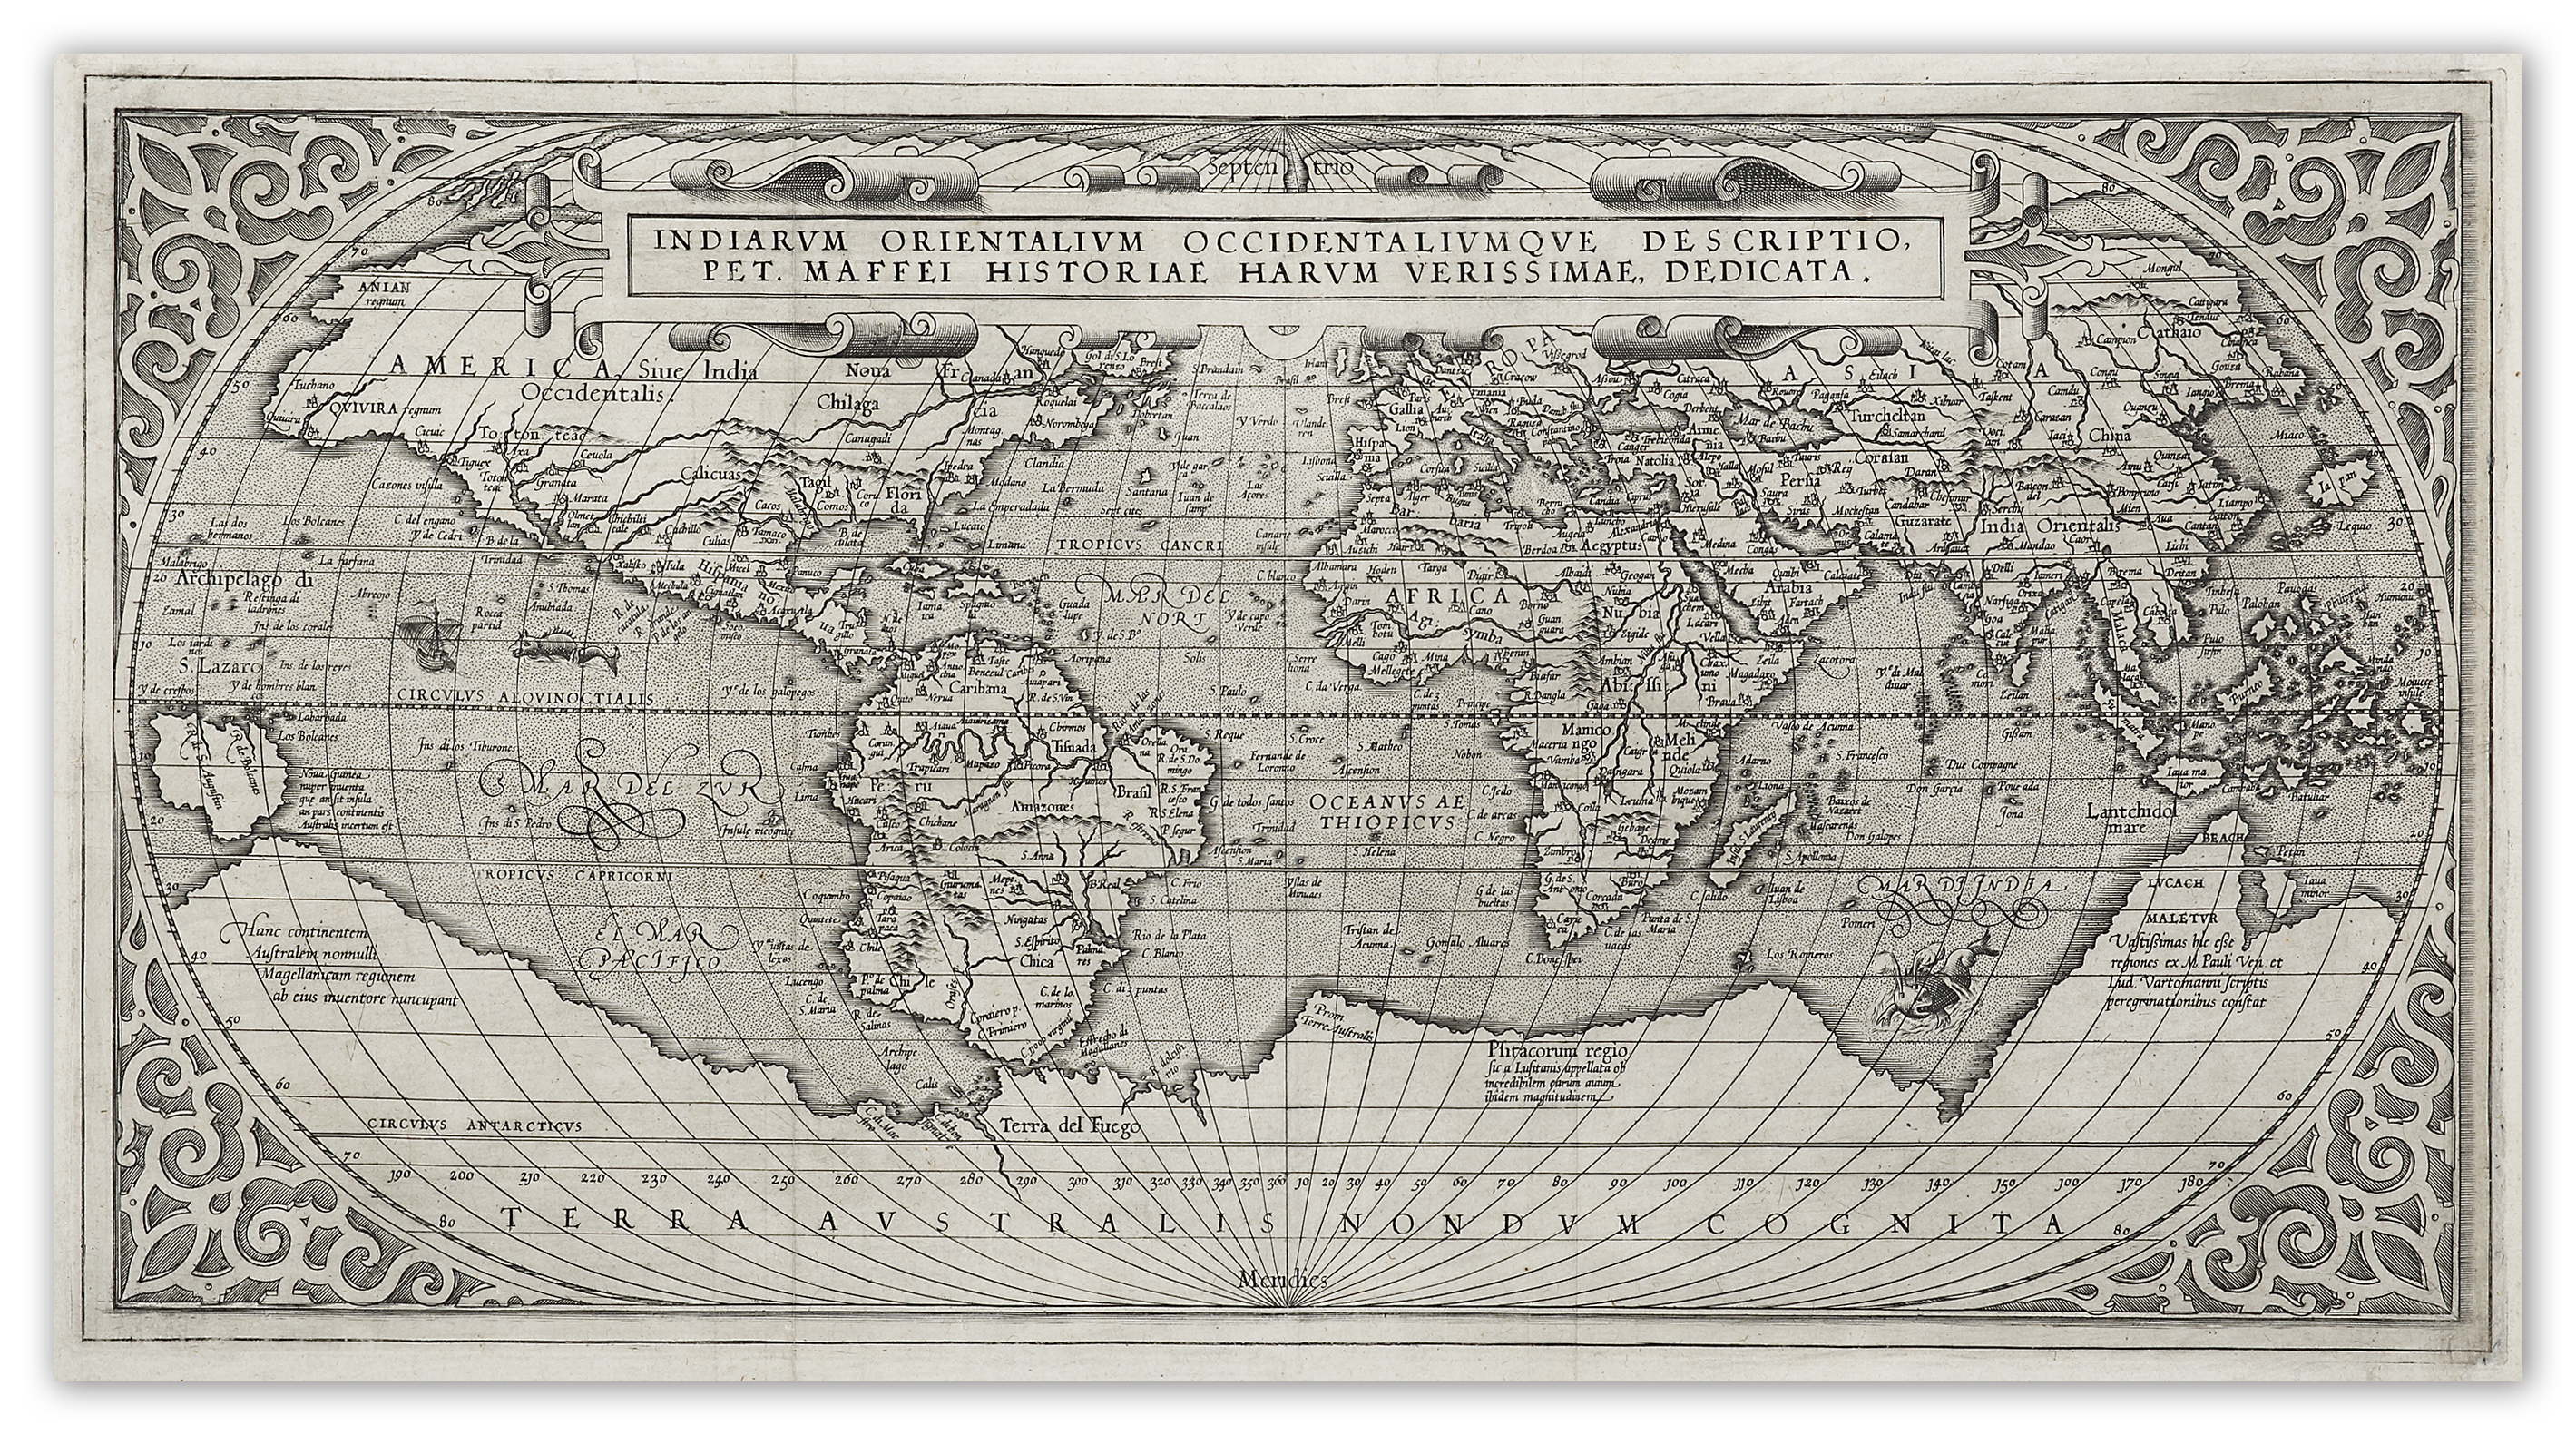 WORLD-Indiarum Orientalium Occidentalium que Descripto Pet. Maefei Historiae Harum Verissimae Dedicata. - Antique Map from 1589